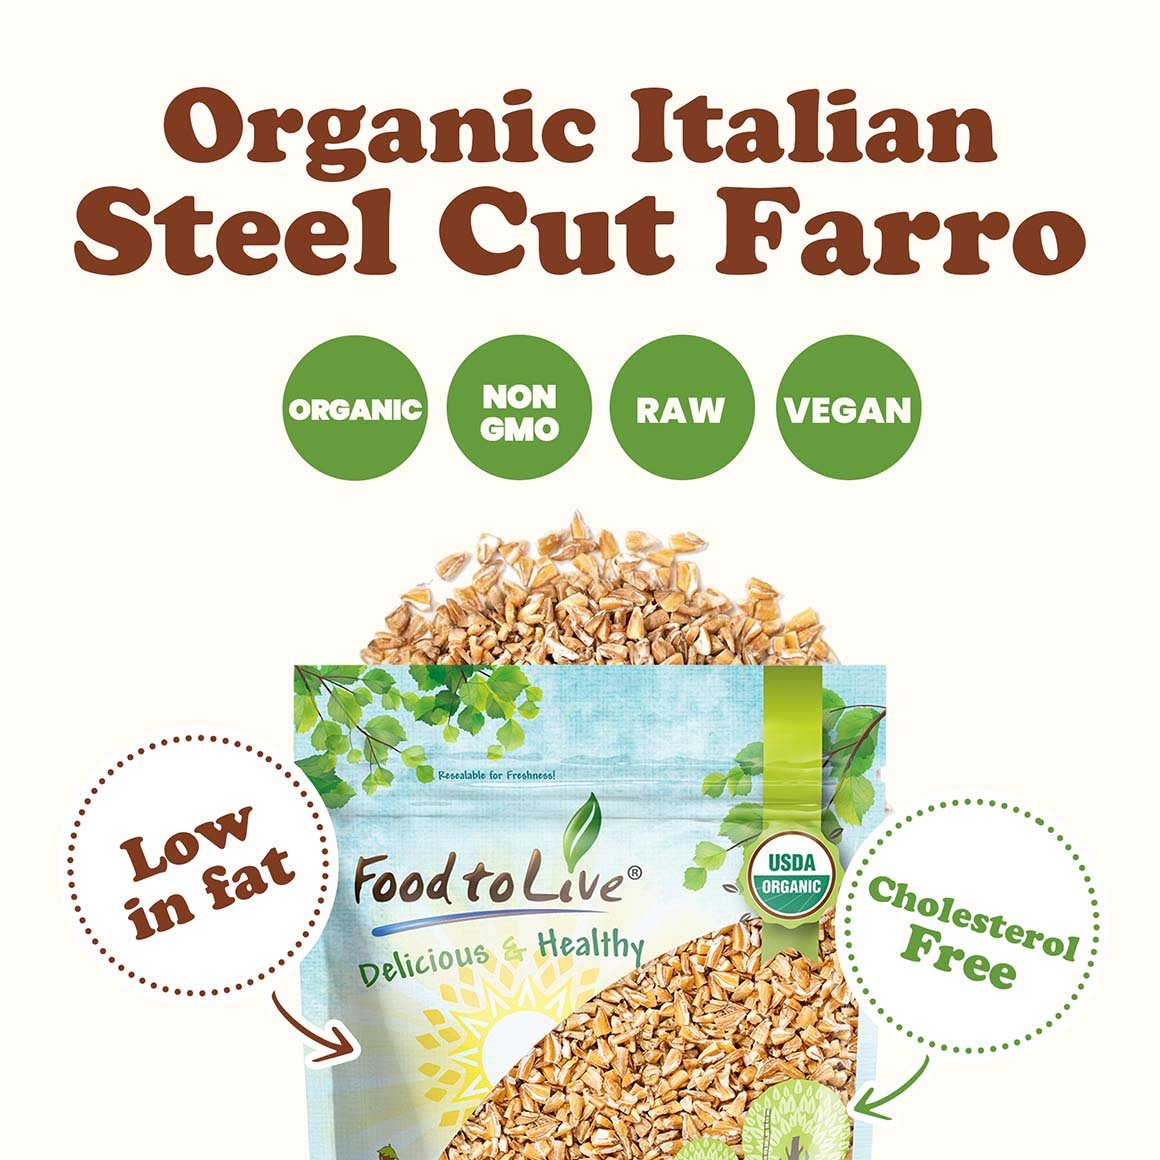 organic-italian-steel-cut-farro-2-min-upd